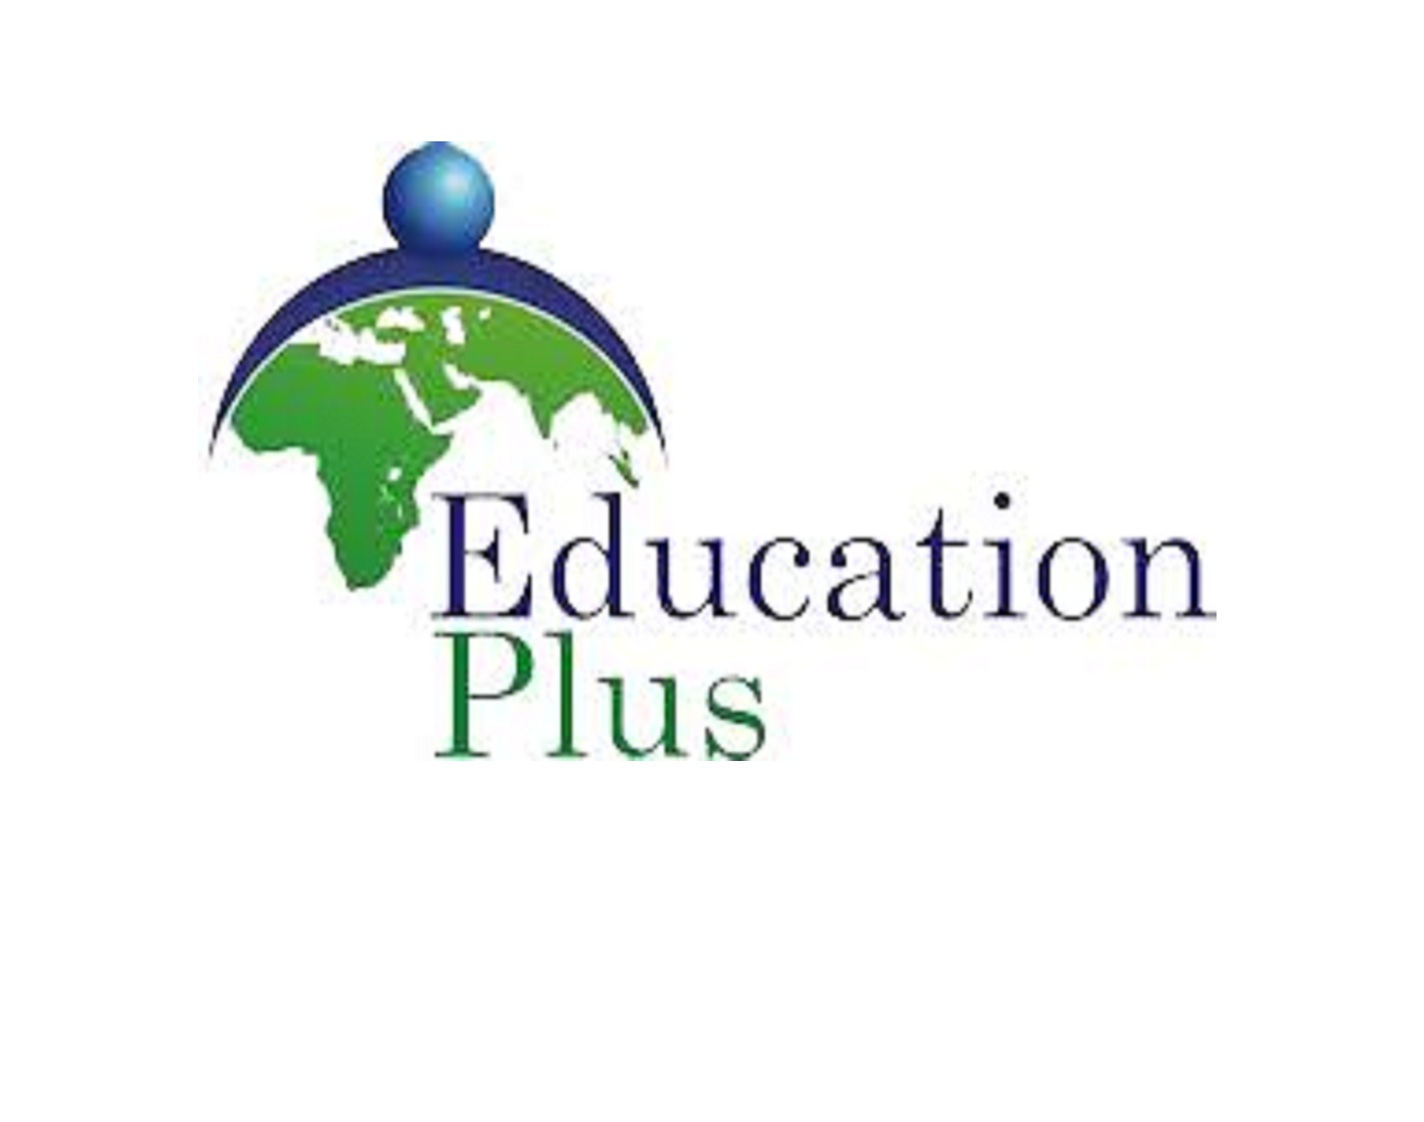 Education Plus
www.edu-plus.net